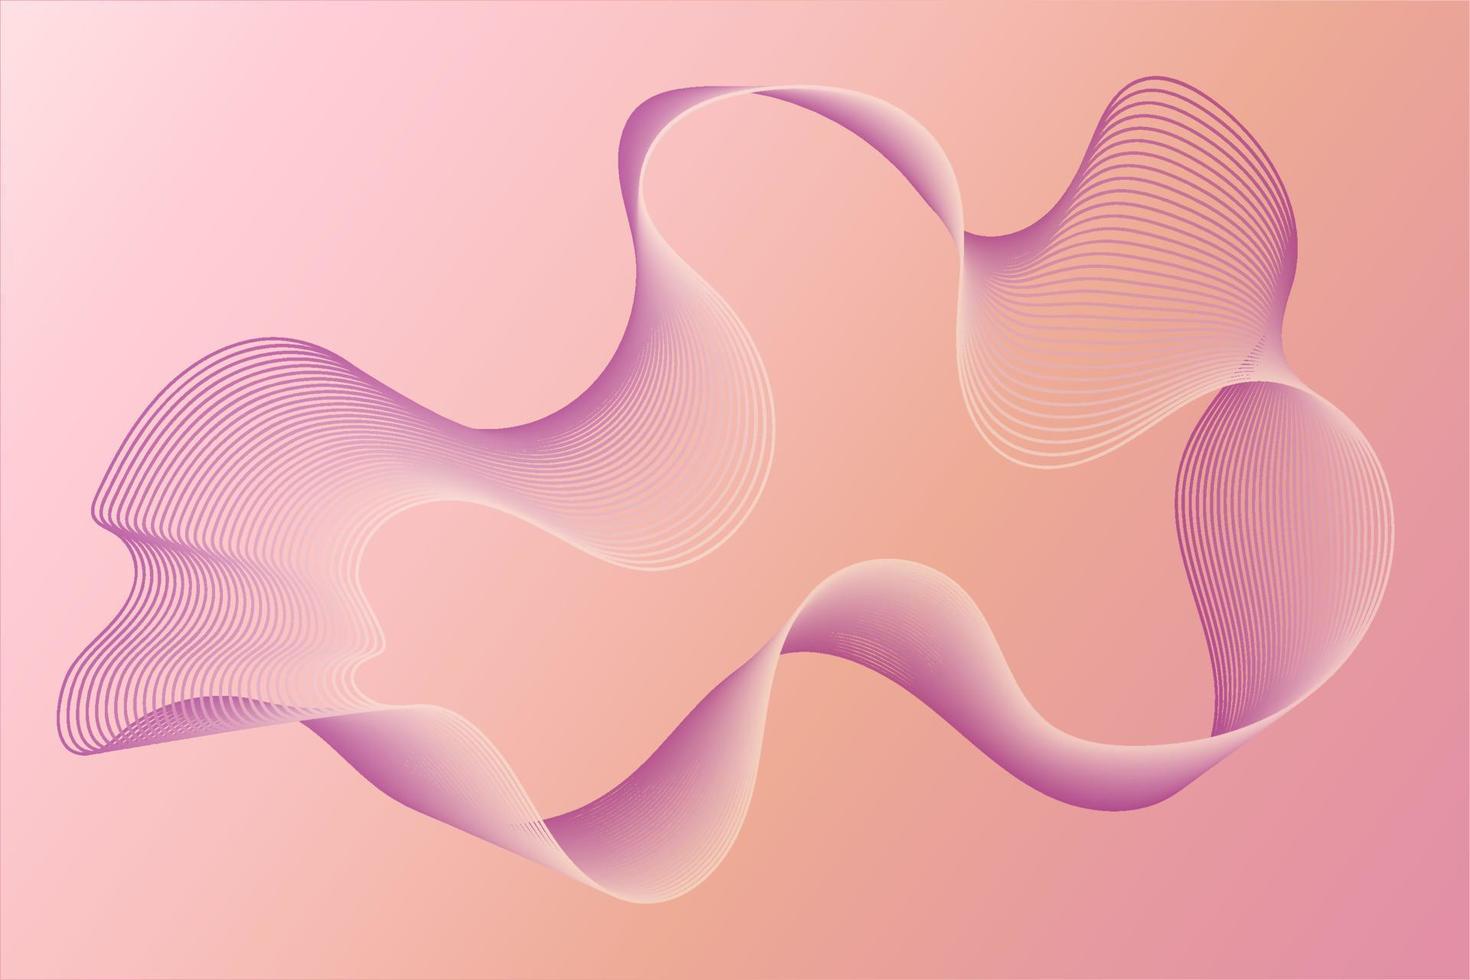 fond géométrique abstrait dans des tons roses calmes avec des lignes violettes et beiges, vecteur